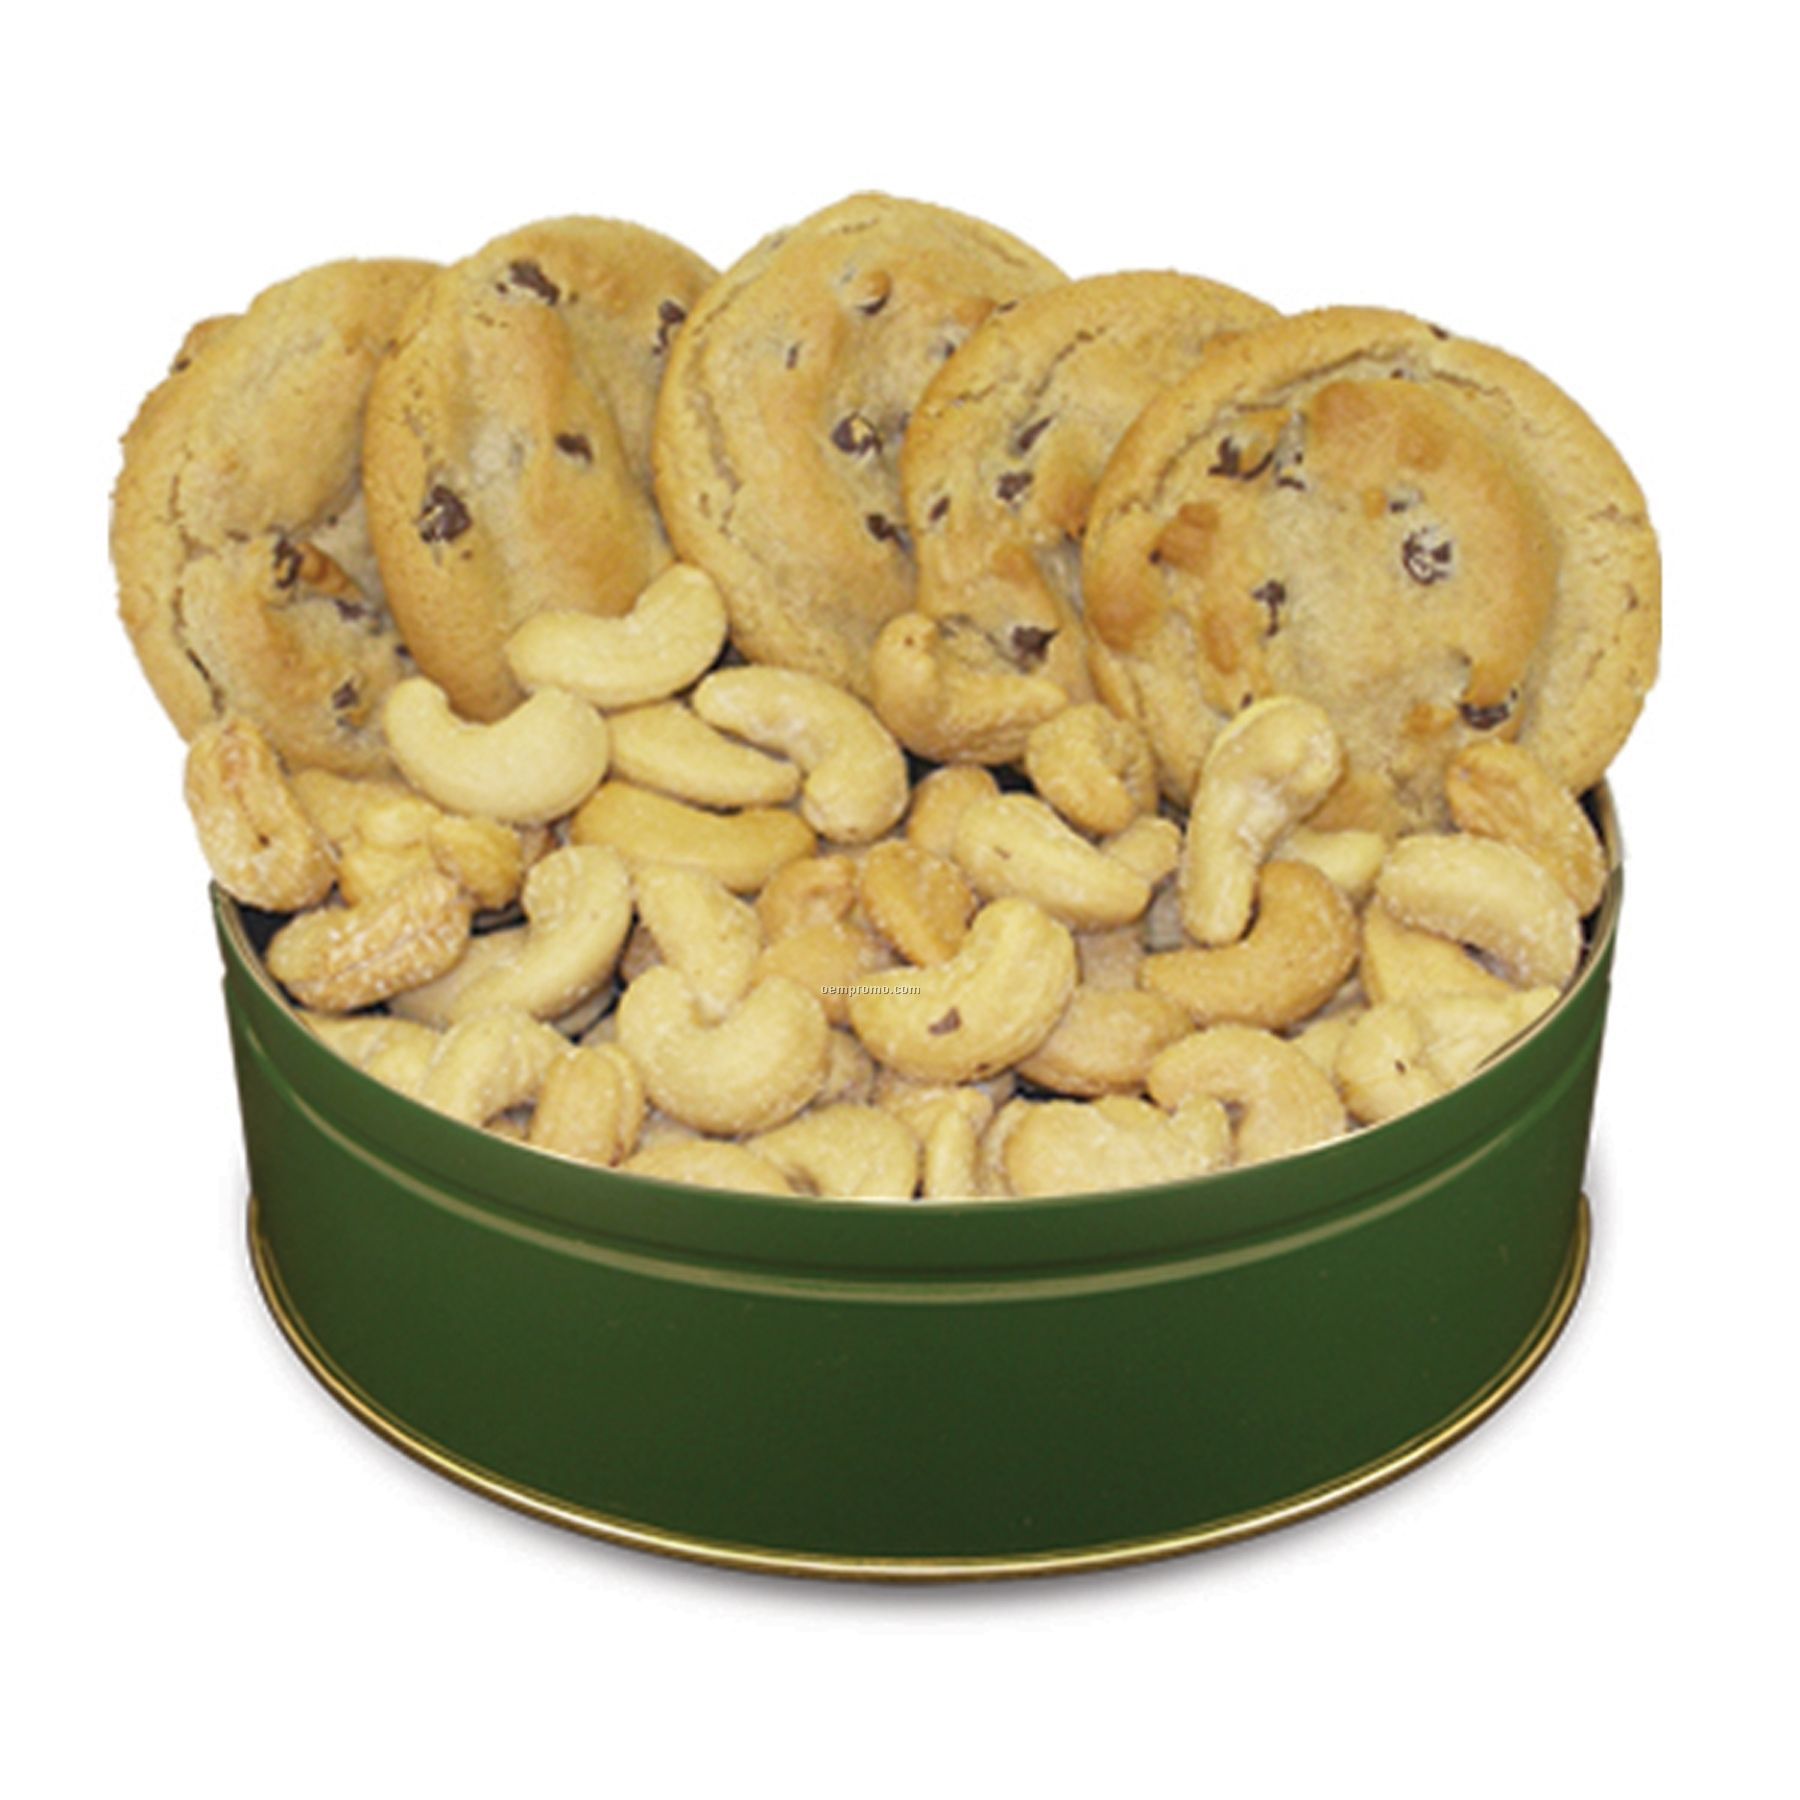 buy dates and cashew cookies online